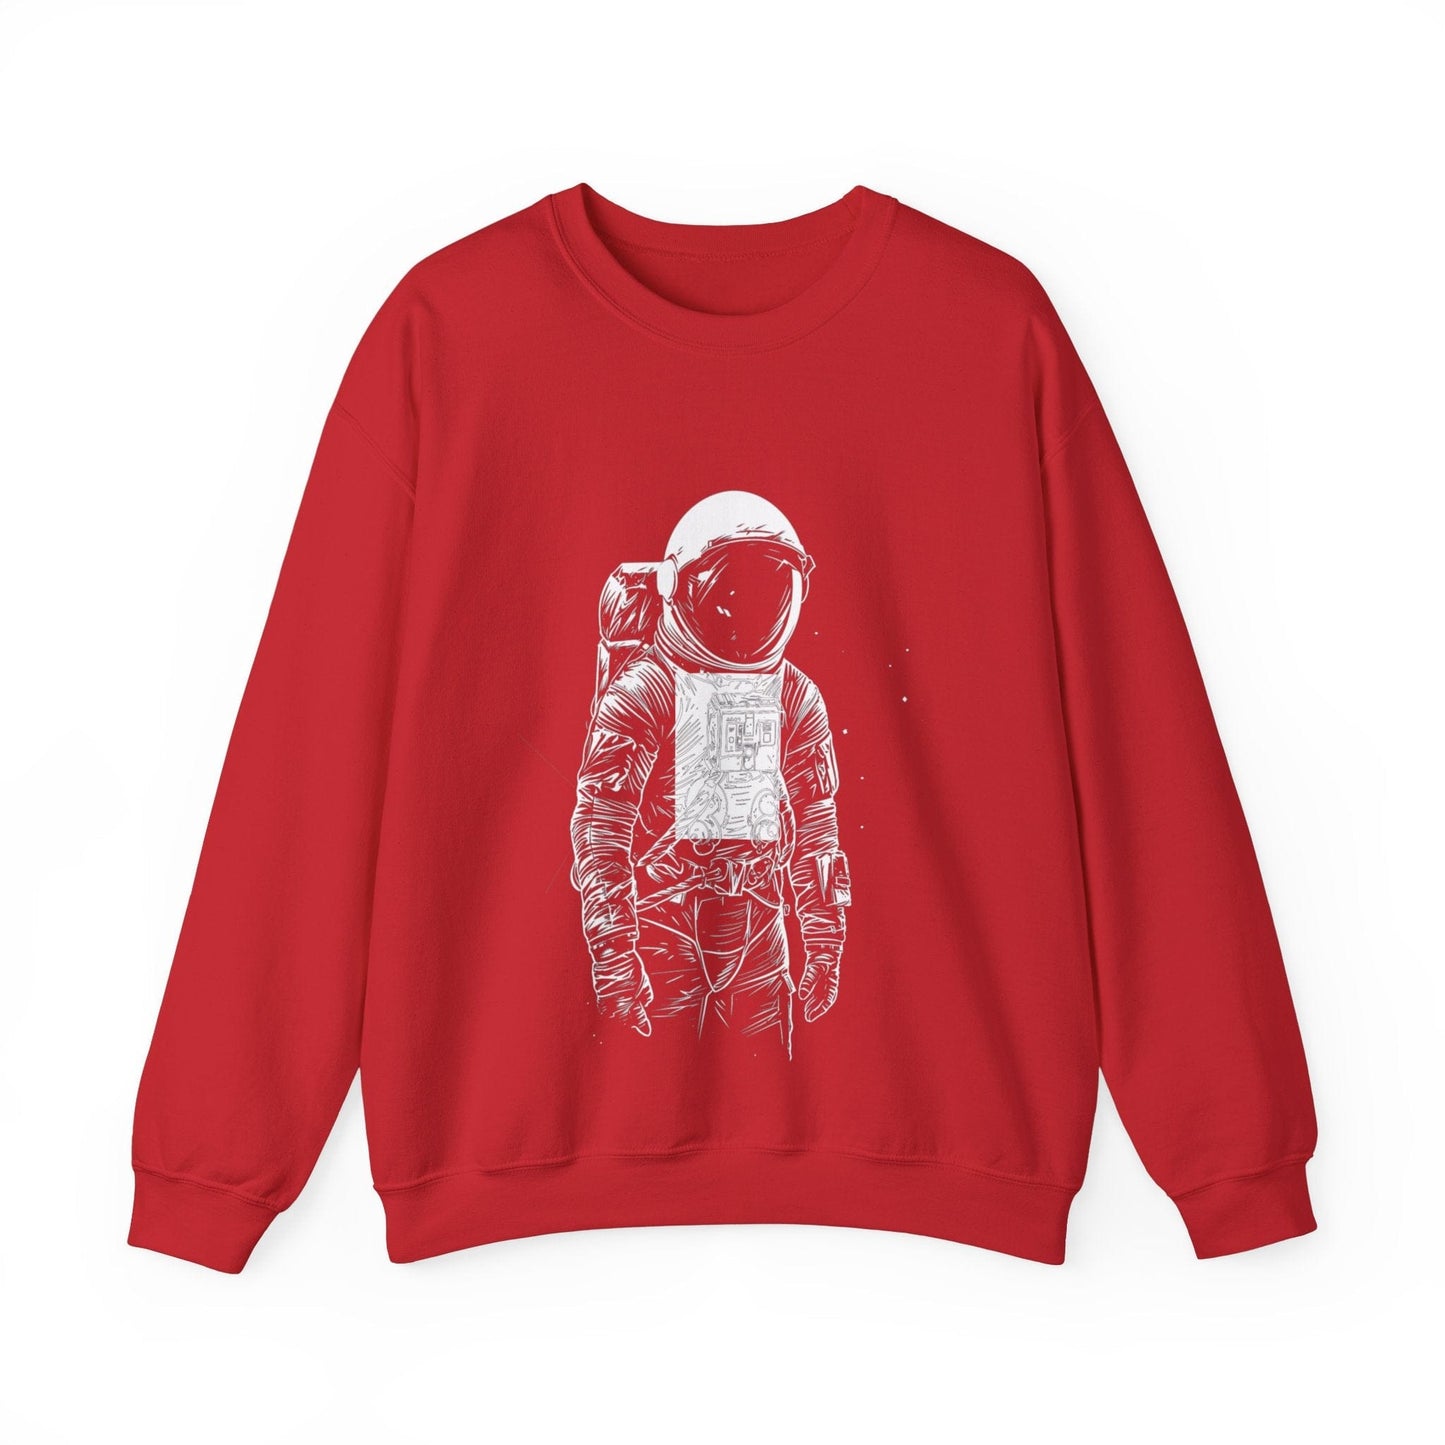 Sweatshirt S / Red Astro Lines Sweater